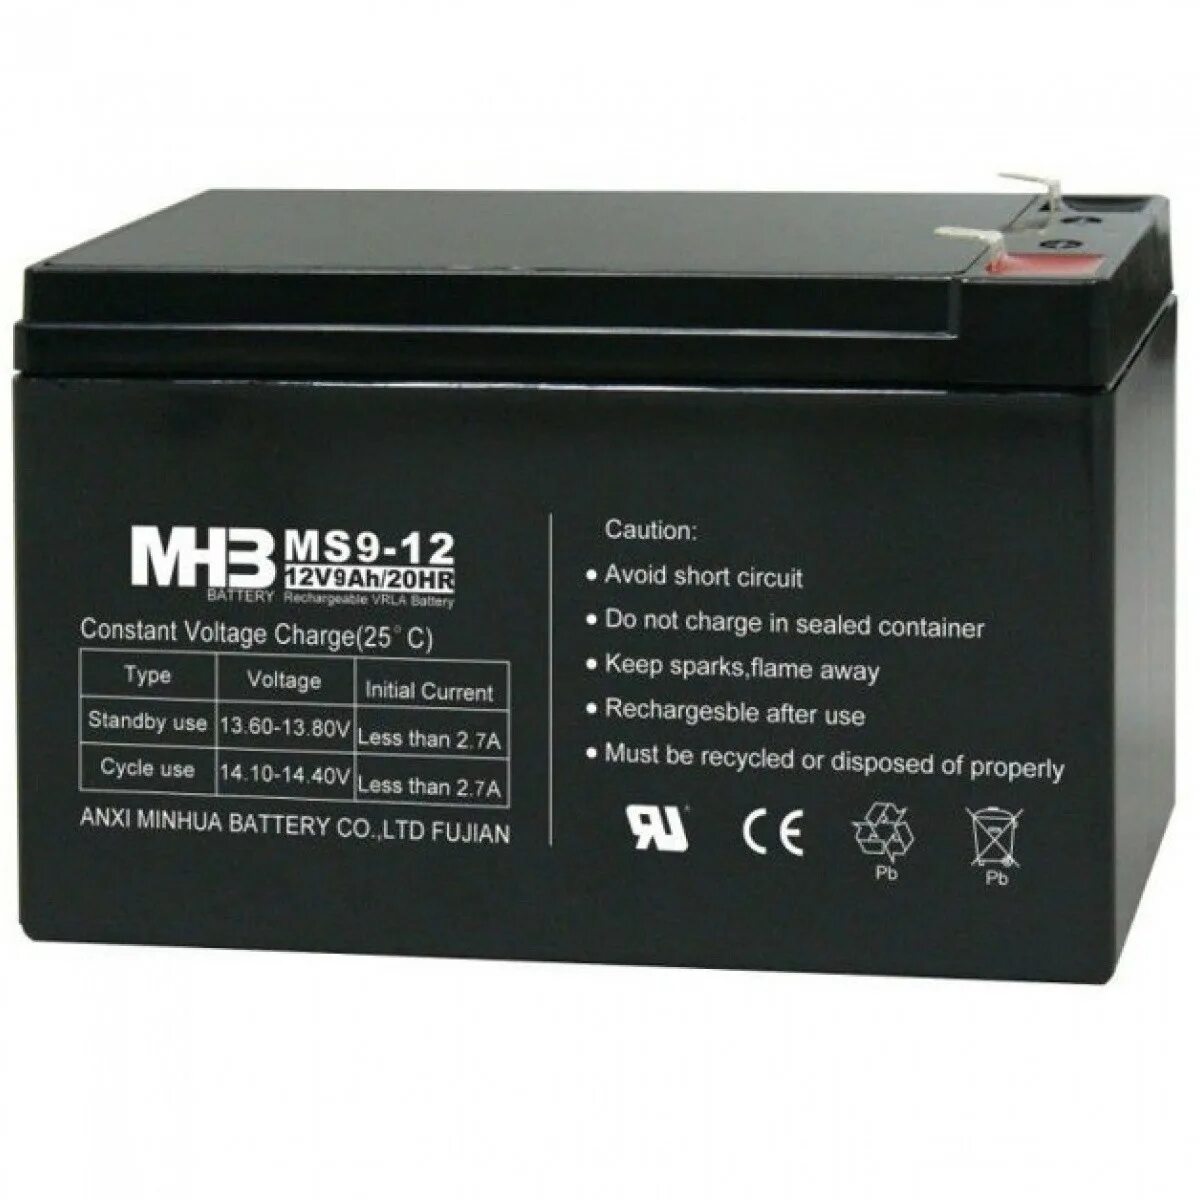 Купить аккумулятор 7ah. MHB ms7-12 12v7ah/20hr. Аккумулятор ms9-12 (9ah, 12v). MHB ms9-12 (9ah, 12v). Аккумуляторная батарея MHB ms9-12.